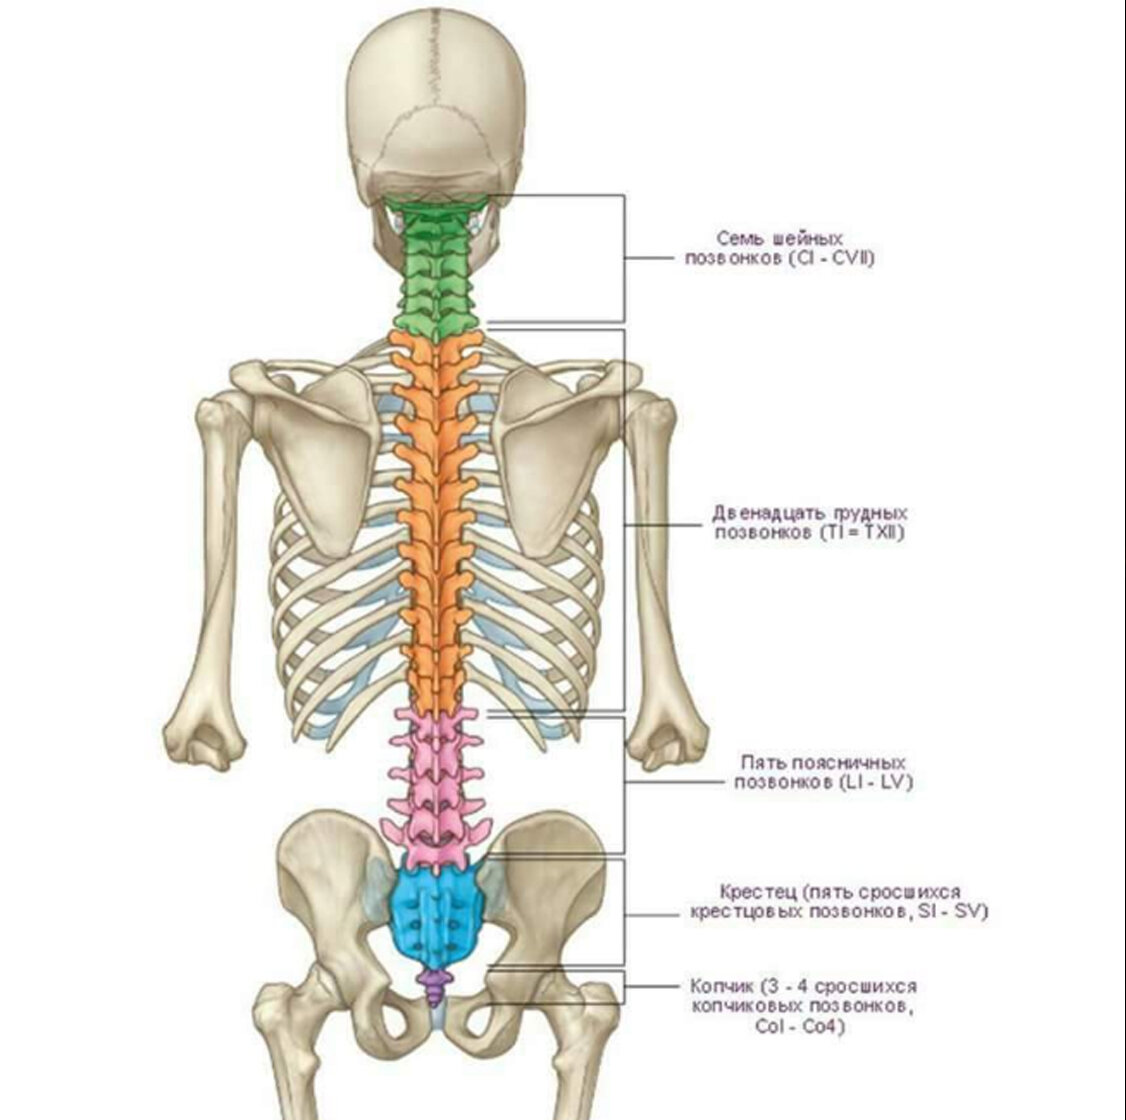 Скелет человека спина. Анатомия человека кости скелета позвоночника. Анатомия костей поясничного отдела позвоночника. Отделы позвоночника человека на скелете человека.